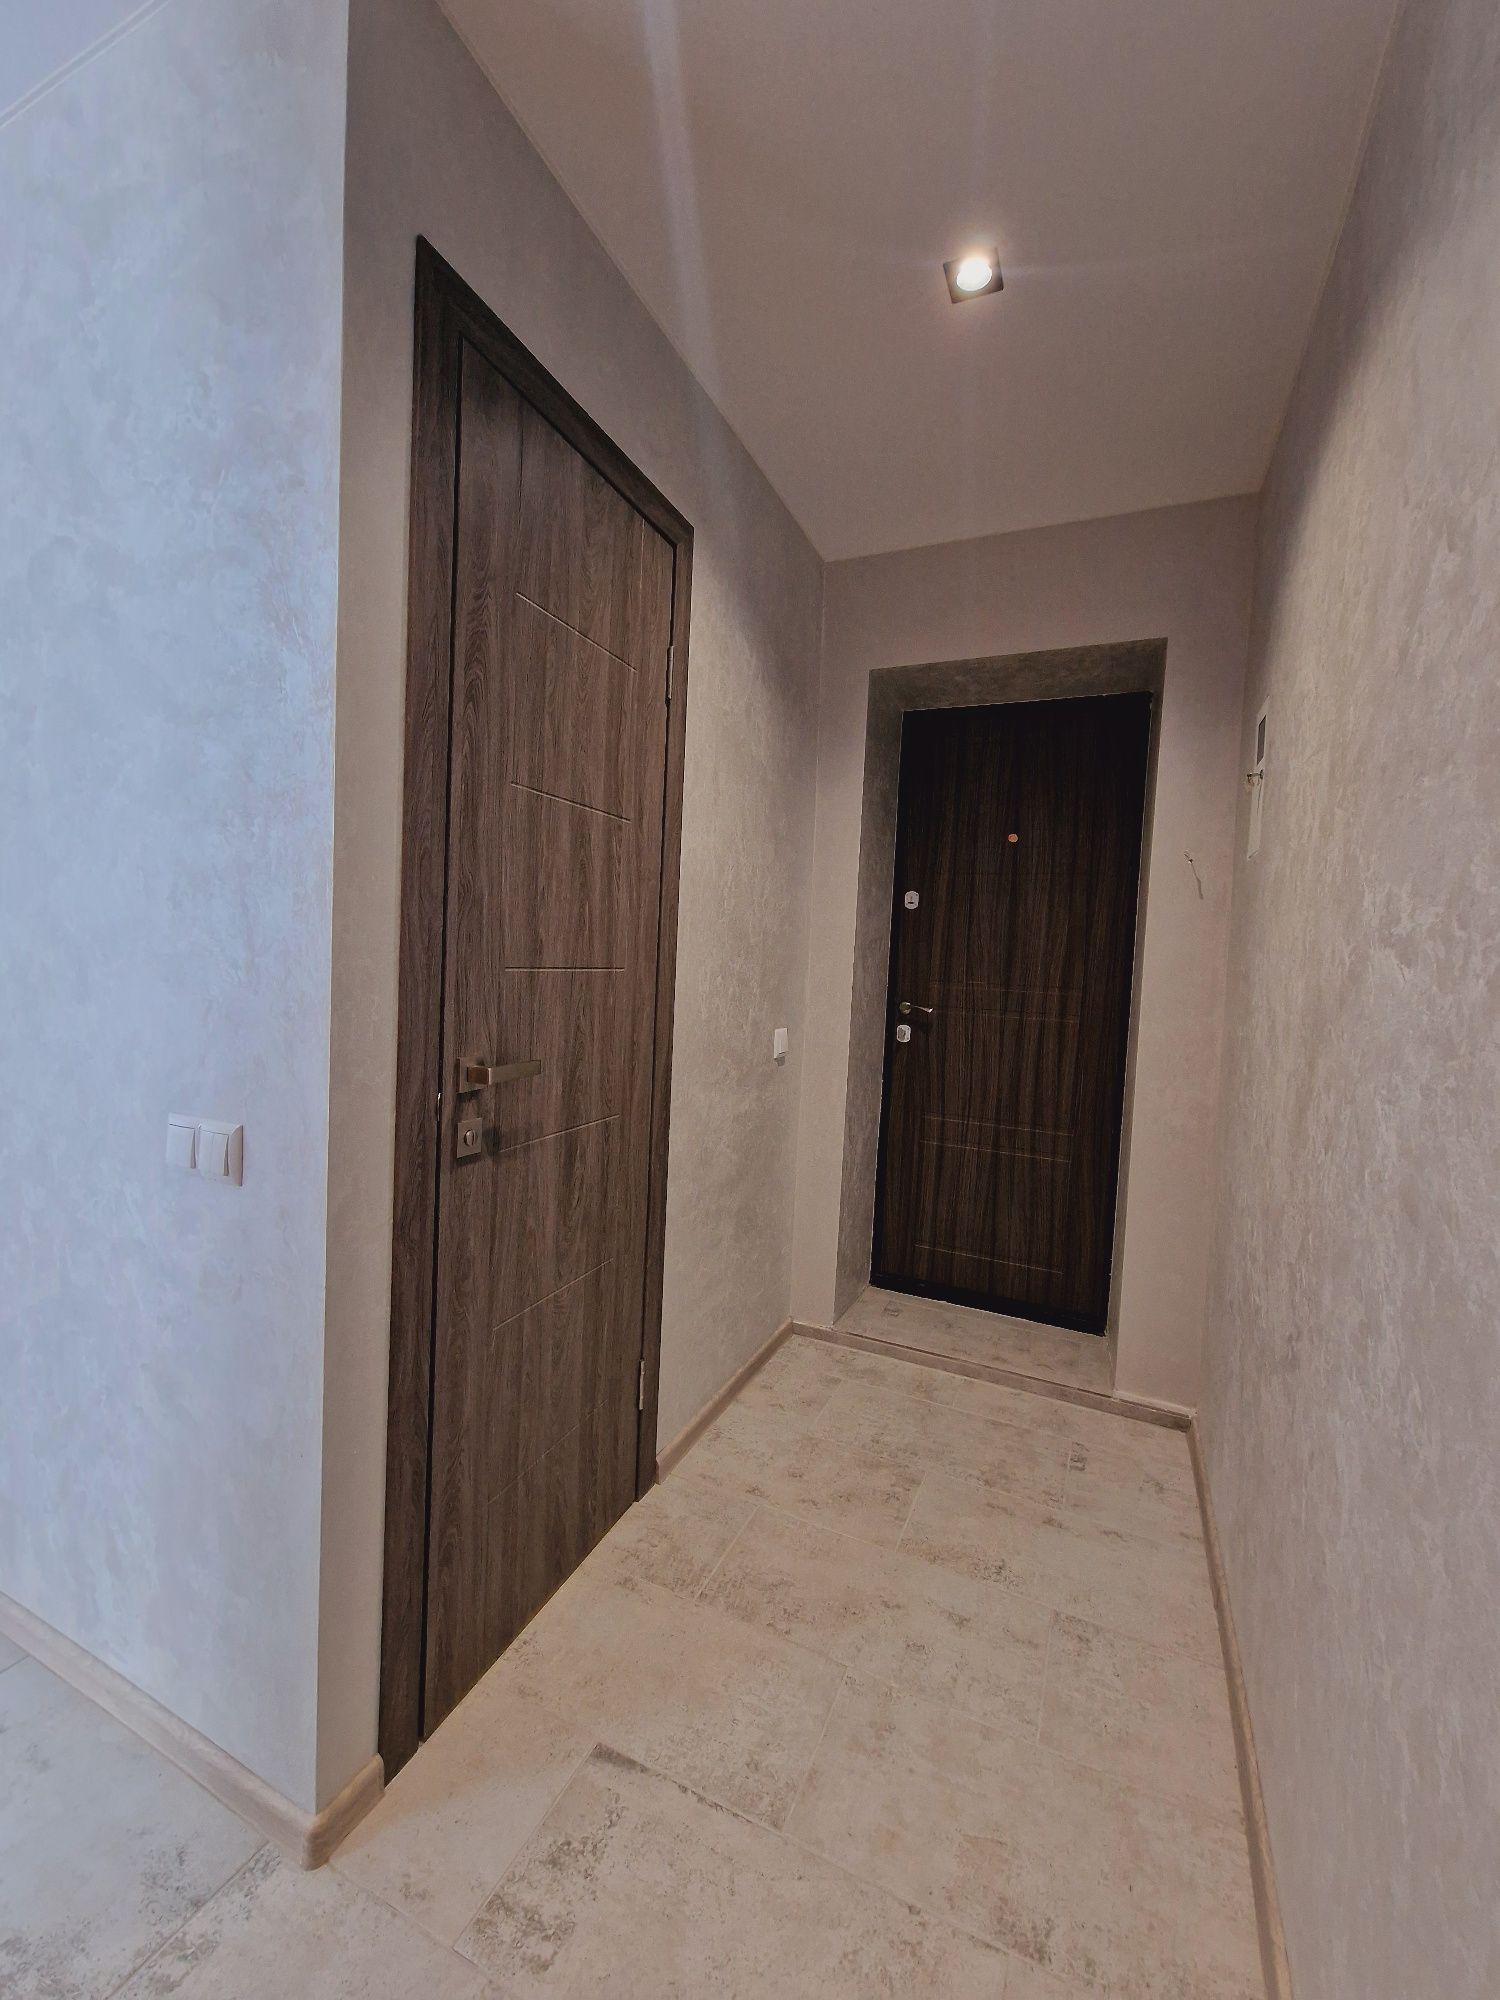 Продам 1 комнатную квартиру с капитальным ремонтом на Кирова 72.